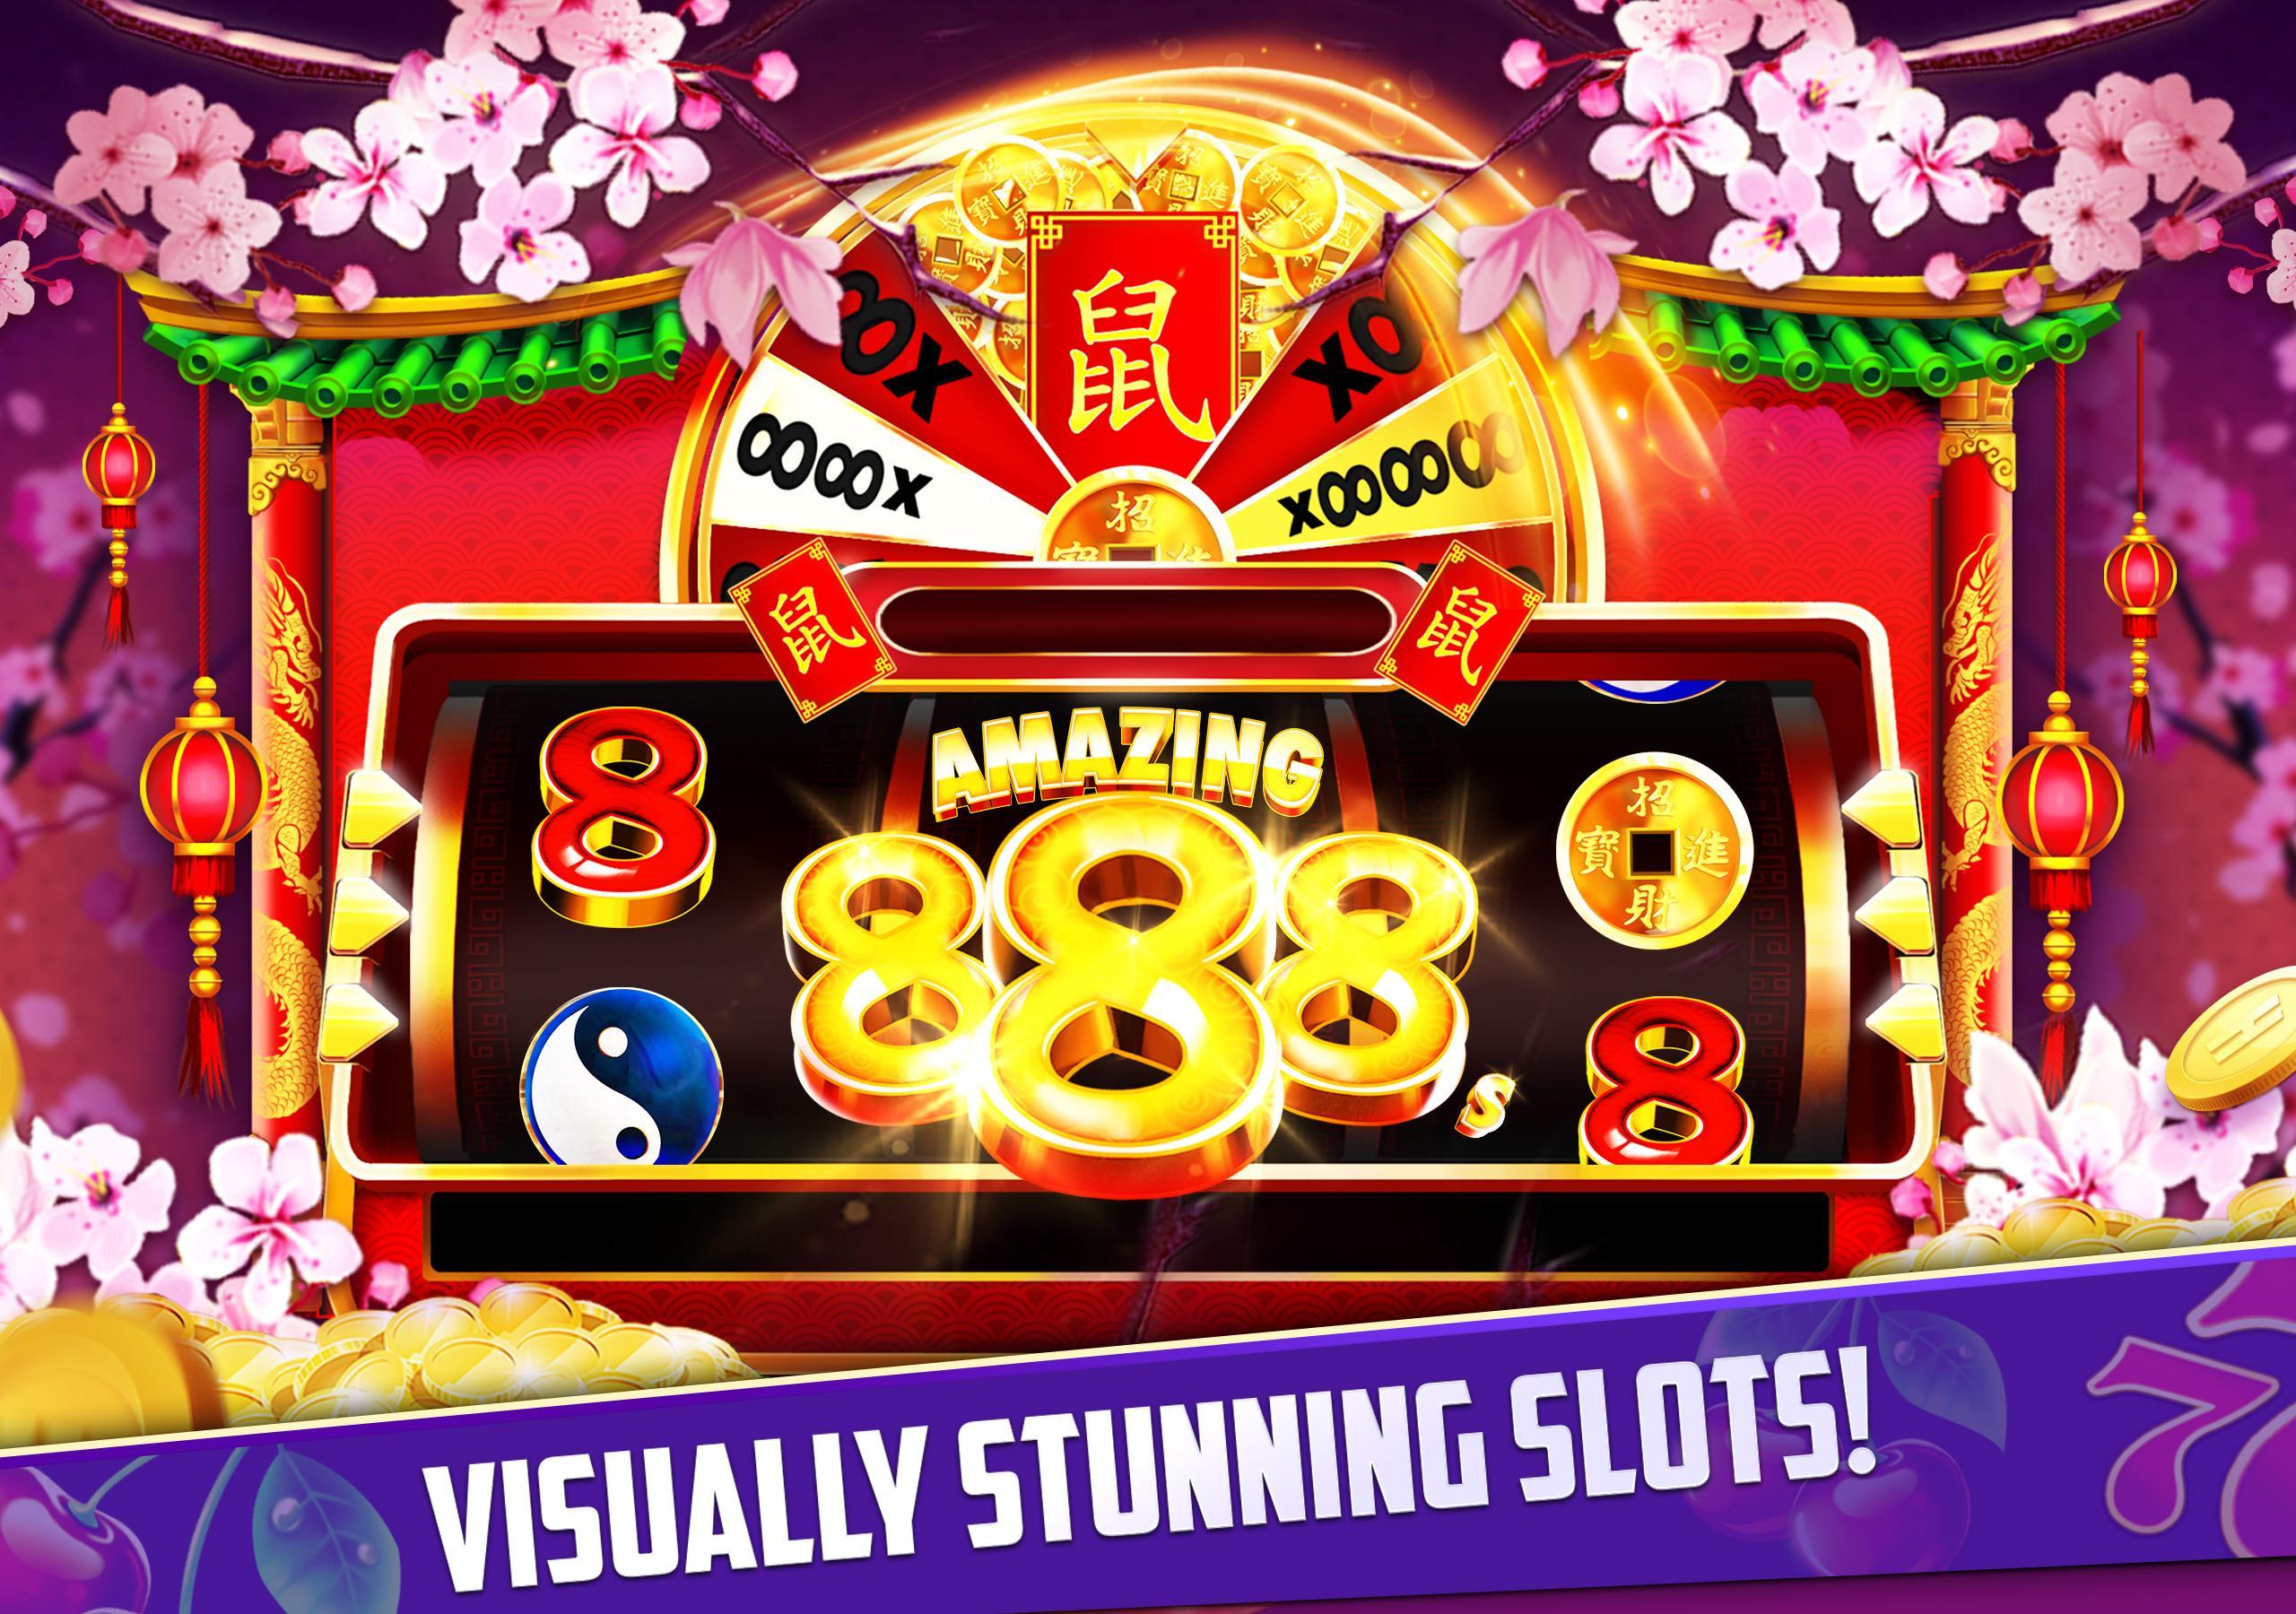 Stars Slots Casino - Vegas Slot Machines 1.0.1366 Screenshot 11